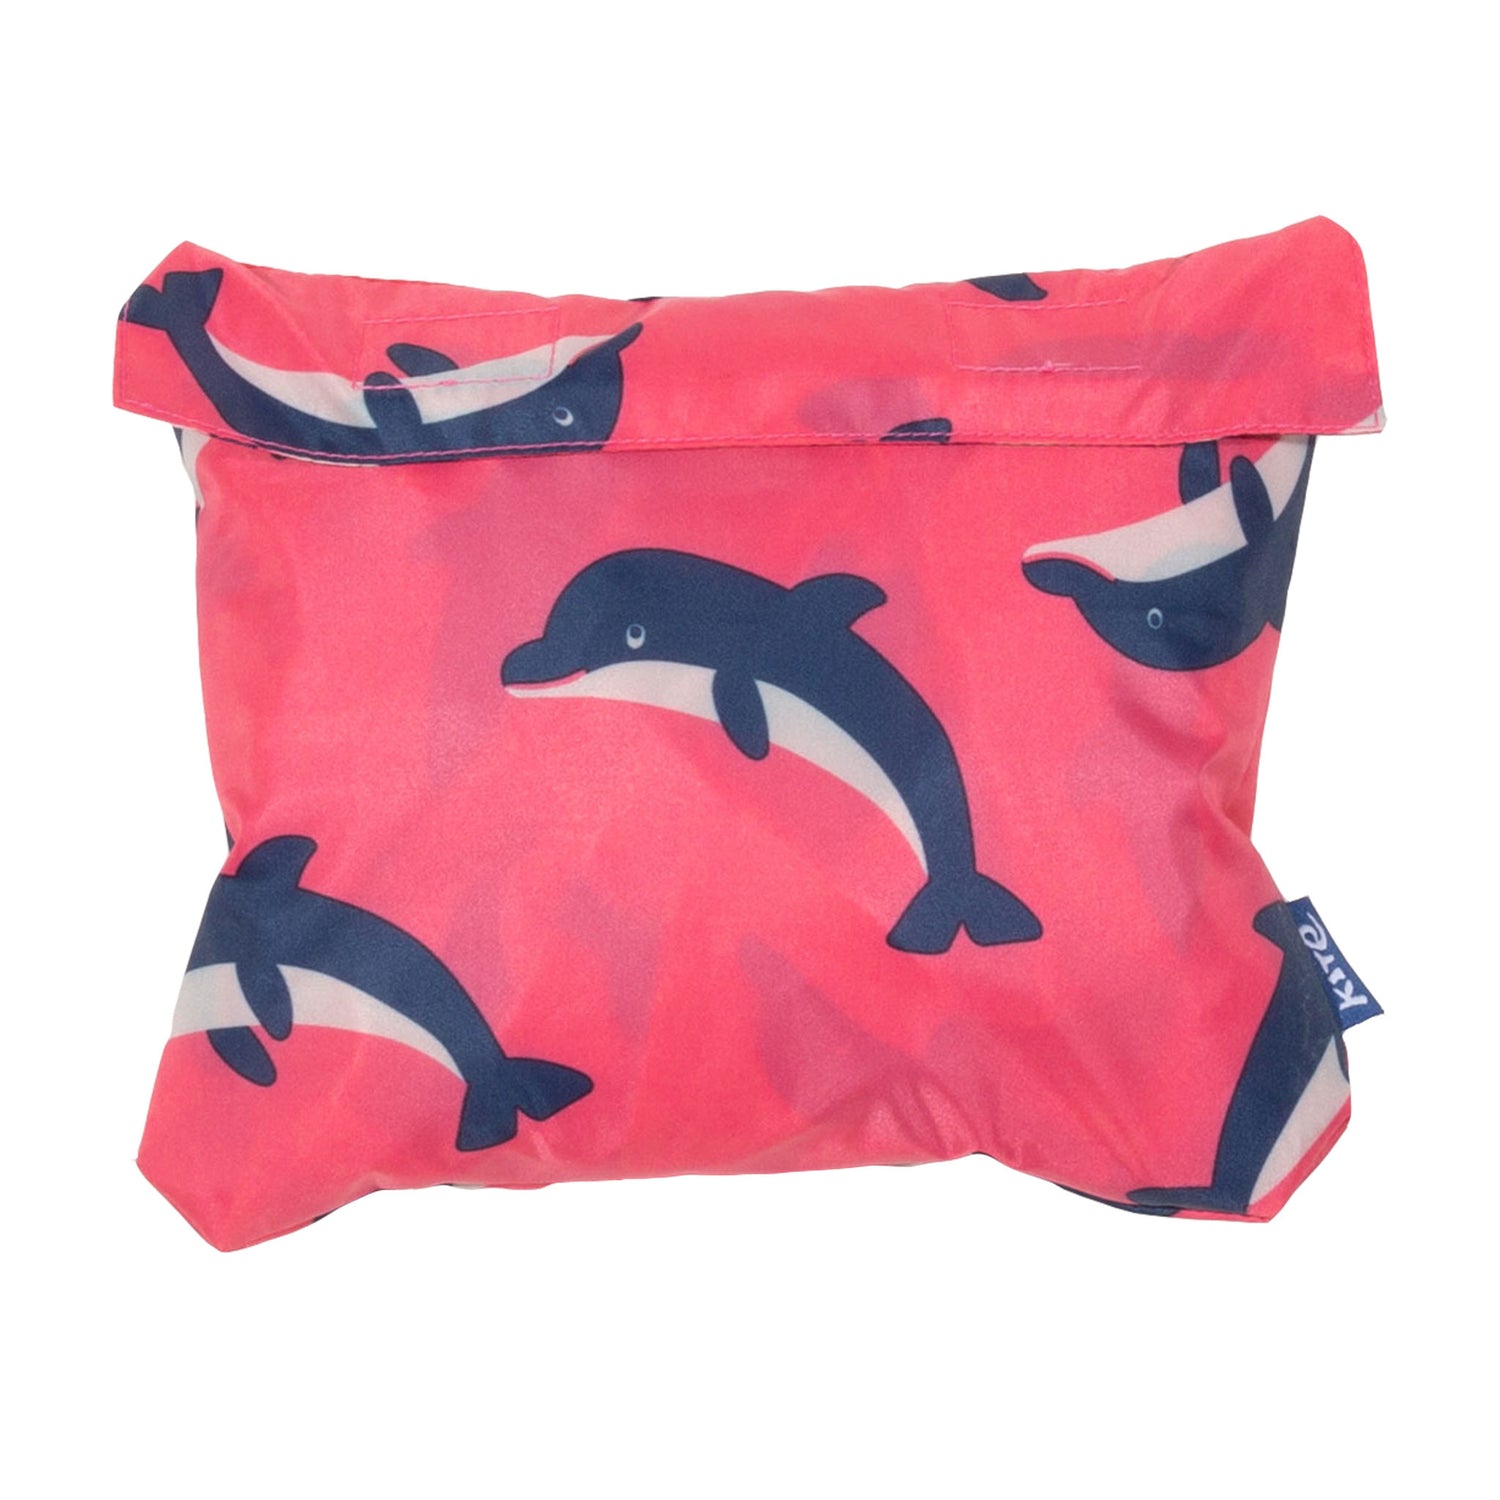 Pink dolphin waterproof jacket packaway bag